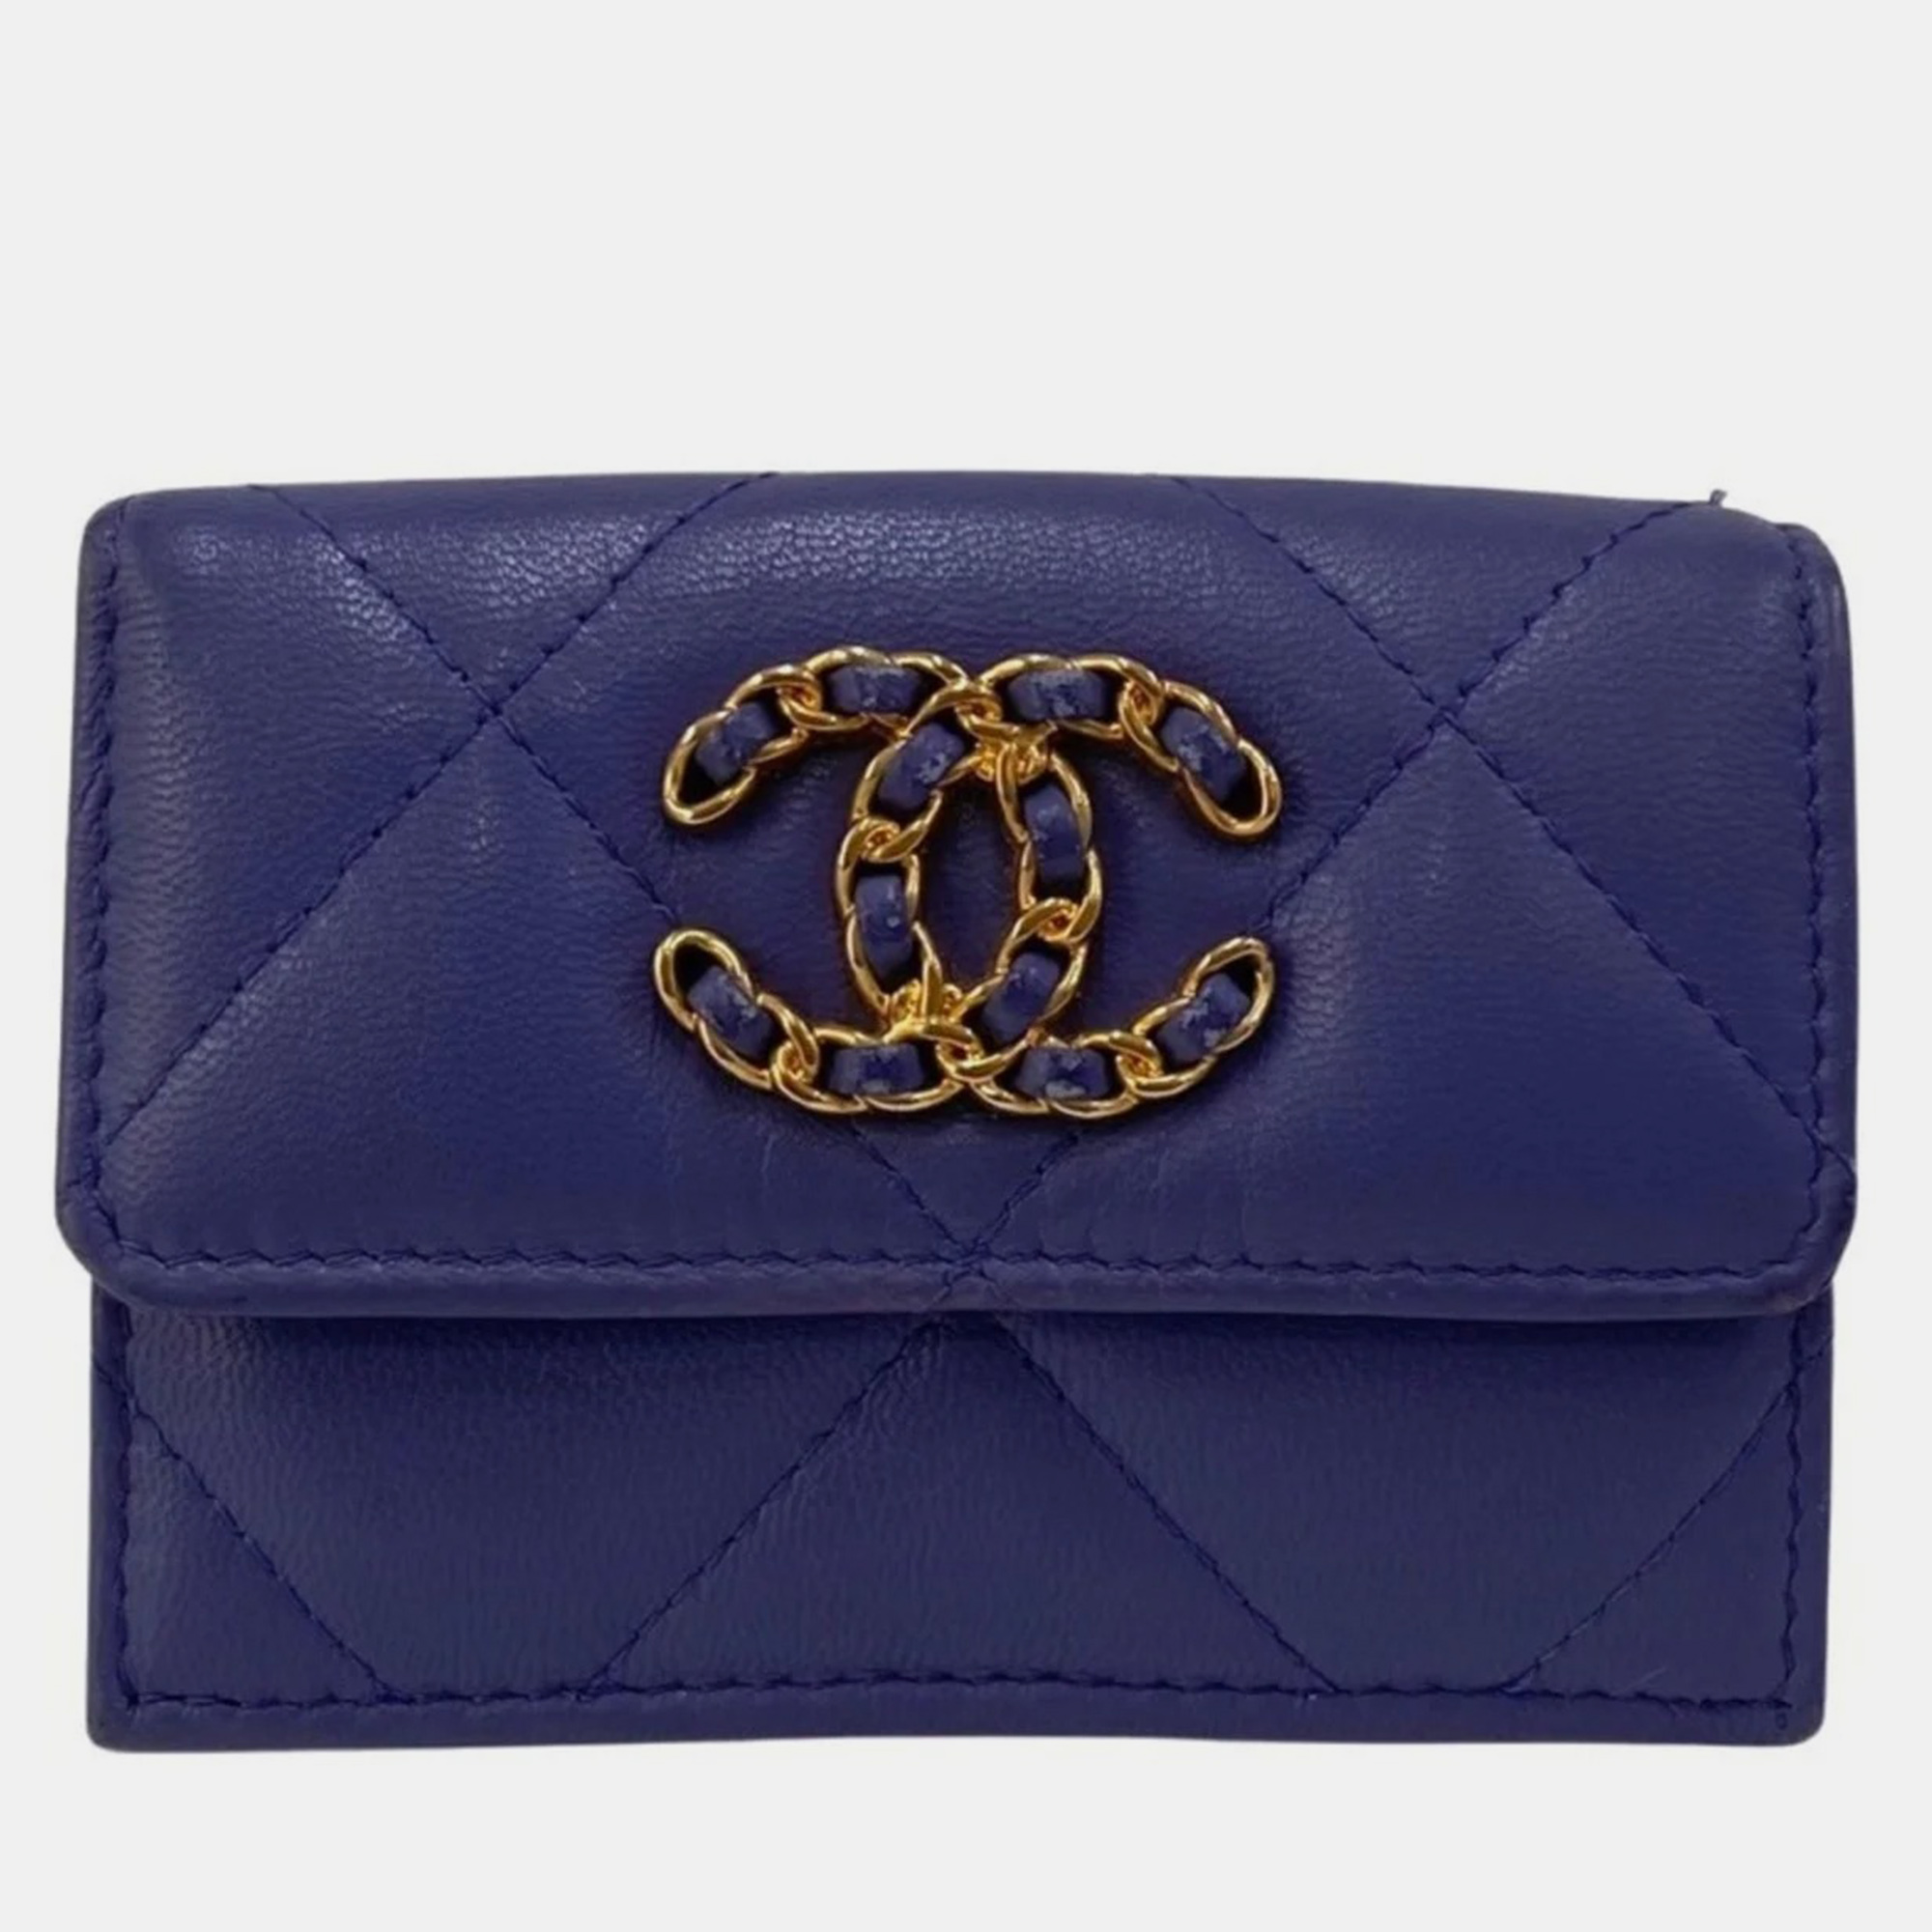 Chanel purple lambskin leather 19 trifold wallet